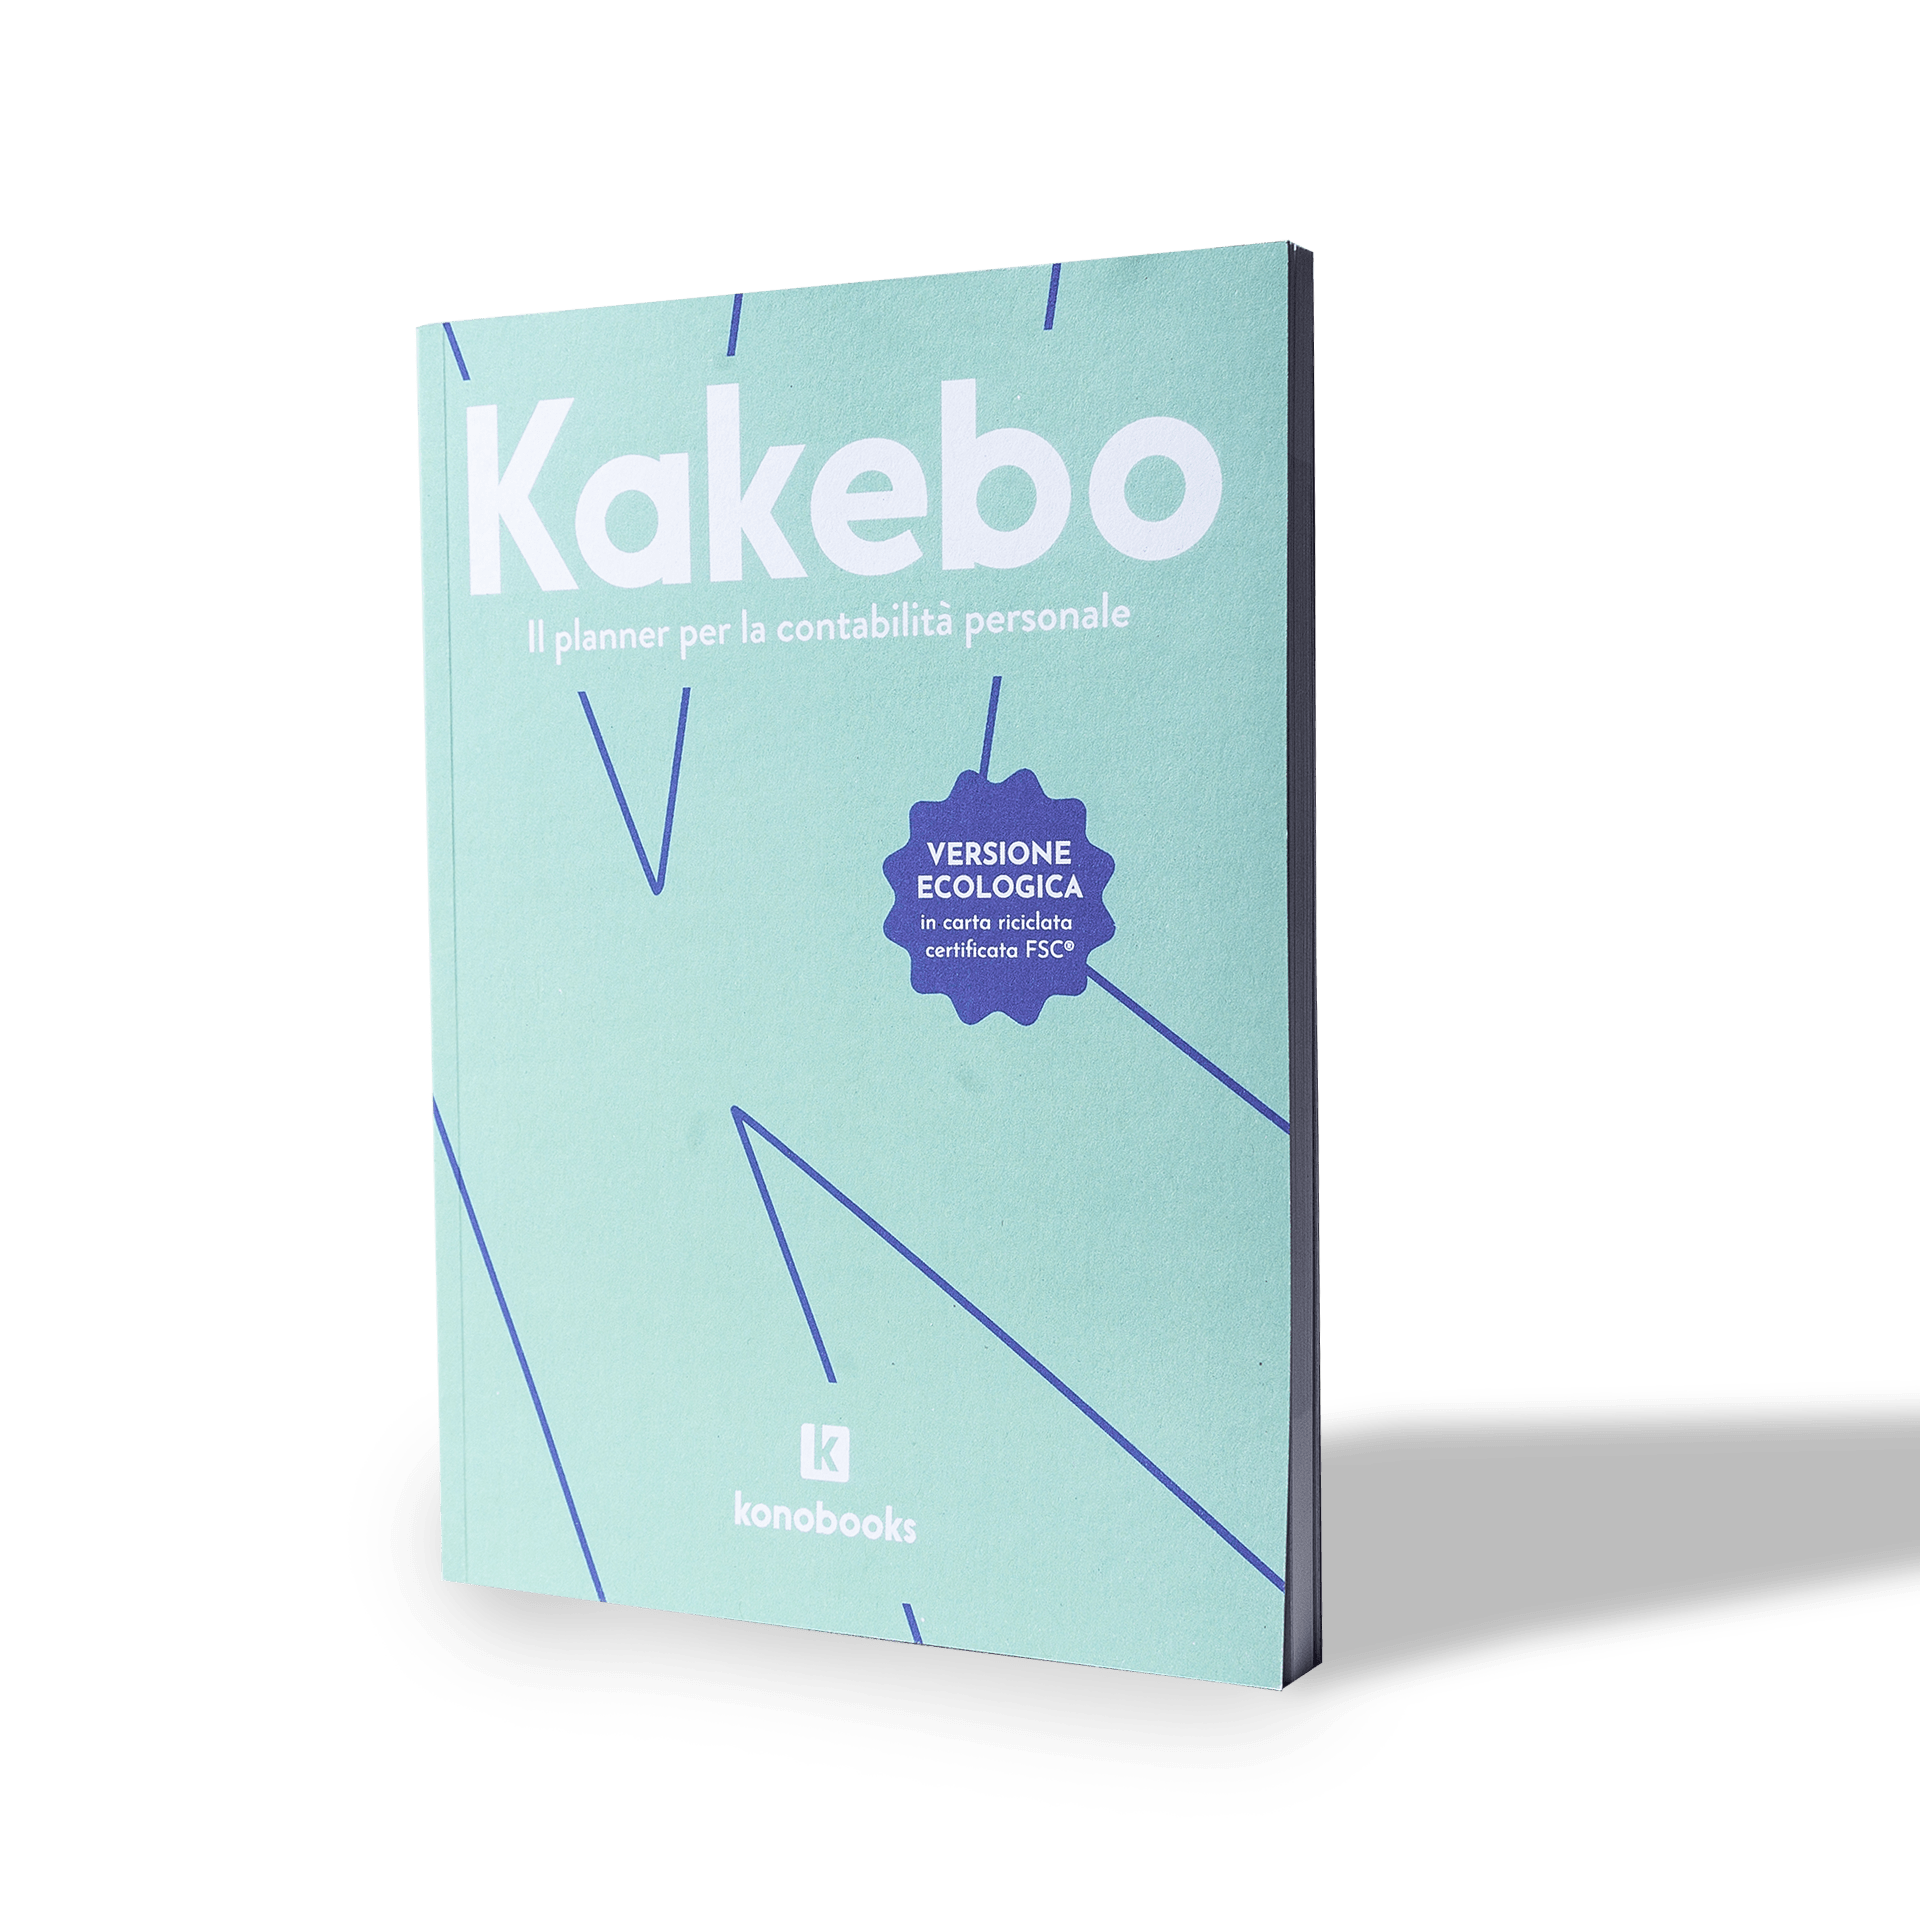 Kakebo Ecosostenibile